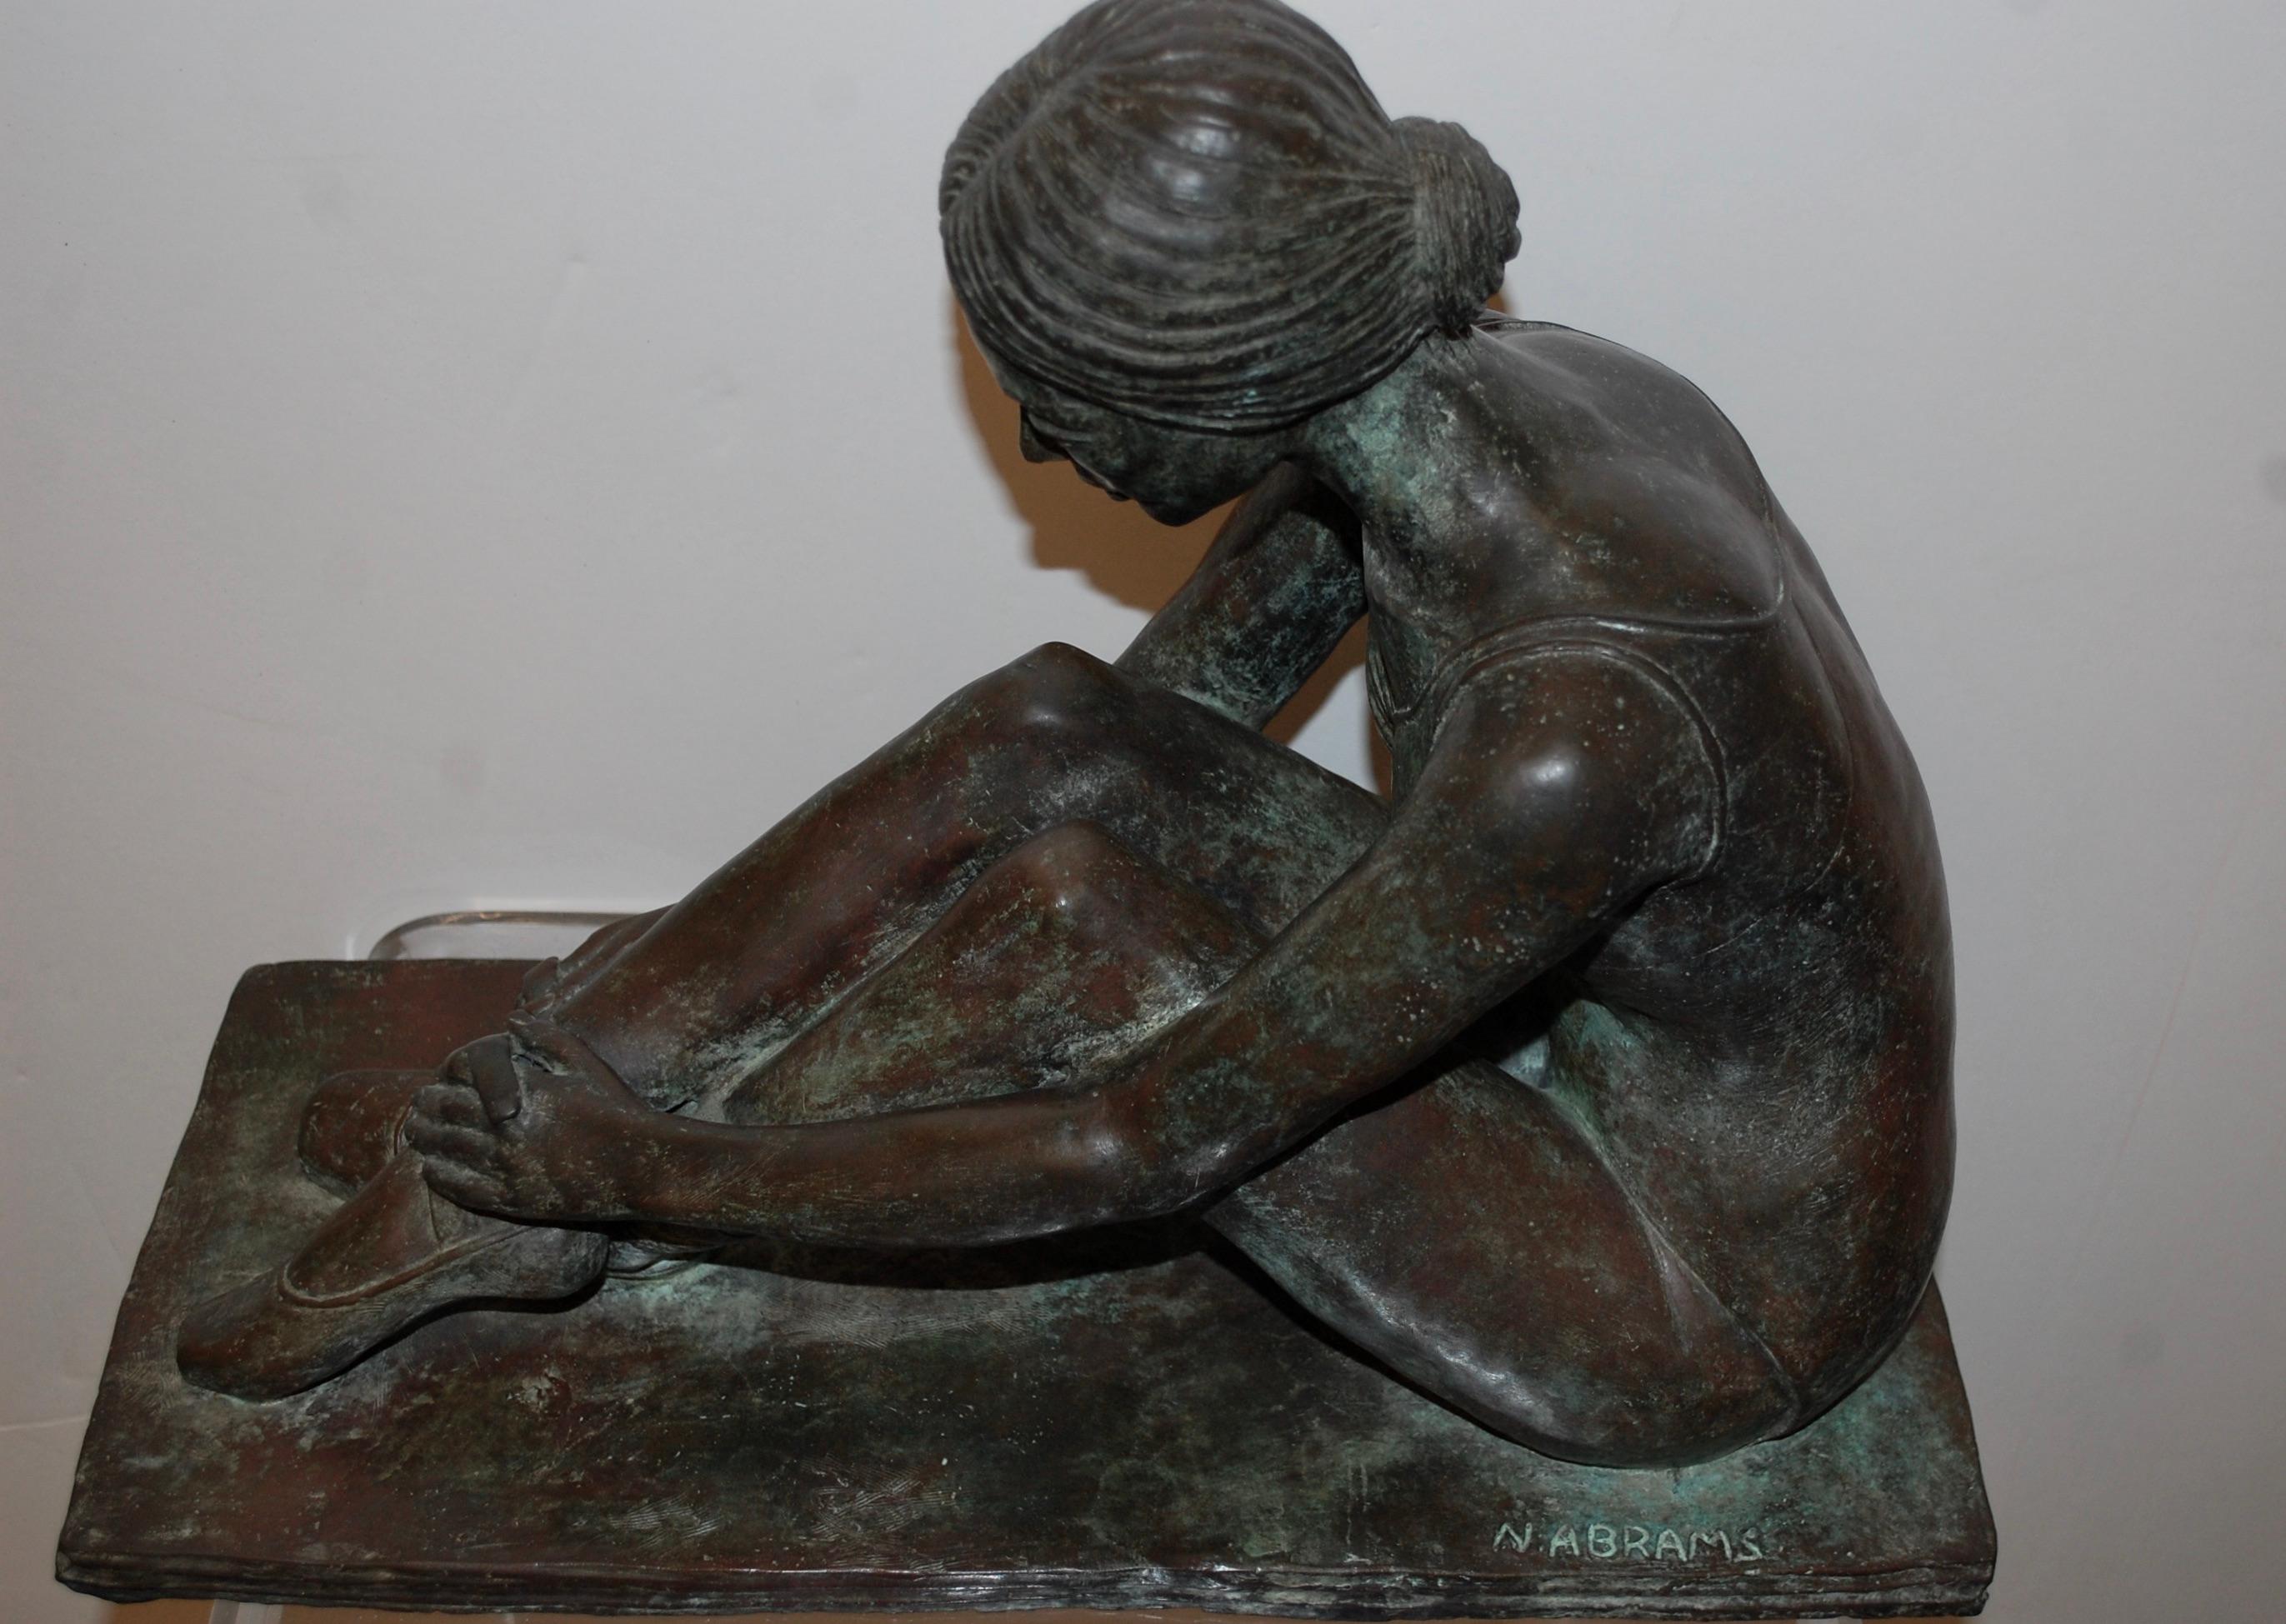 Sitzende Ballerina beim Binden des Schuhs
Bronzeskulptur einer Ballerina beim Schuhbinden, signiert N. Abrams. 